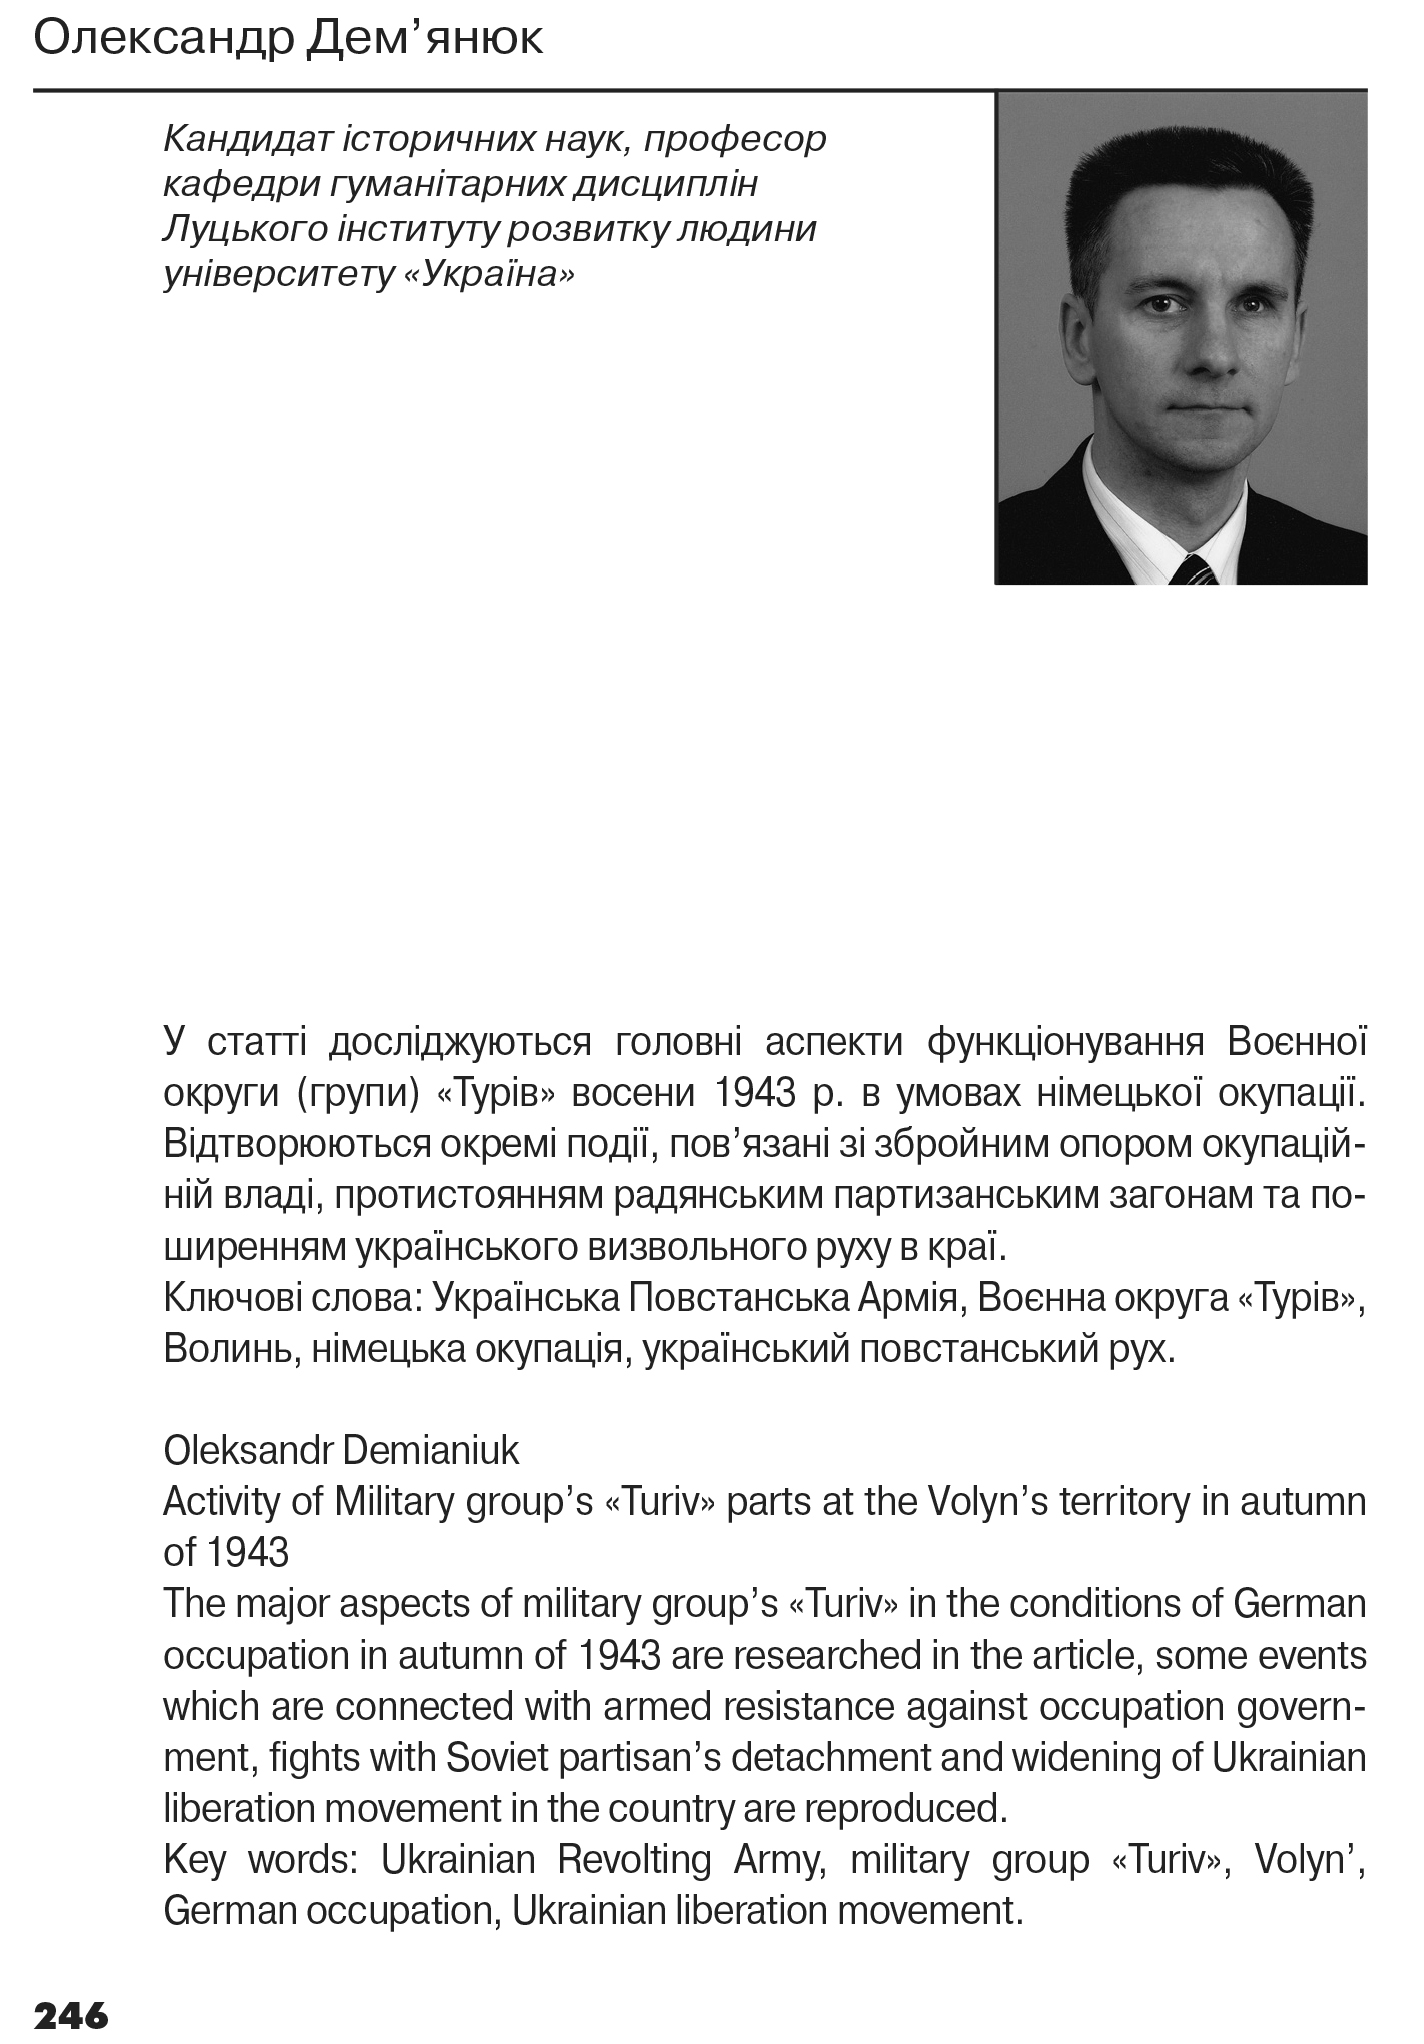 Український визвольний рух №17, ст. 246 - 258